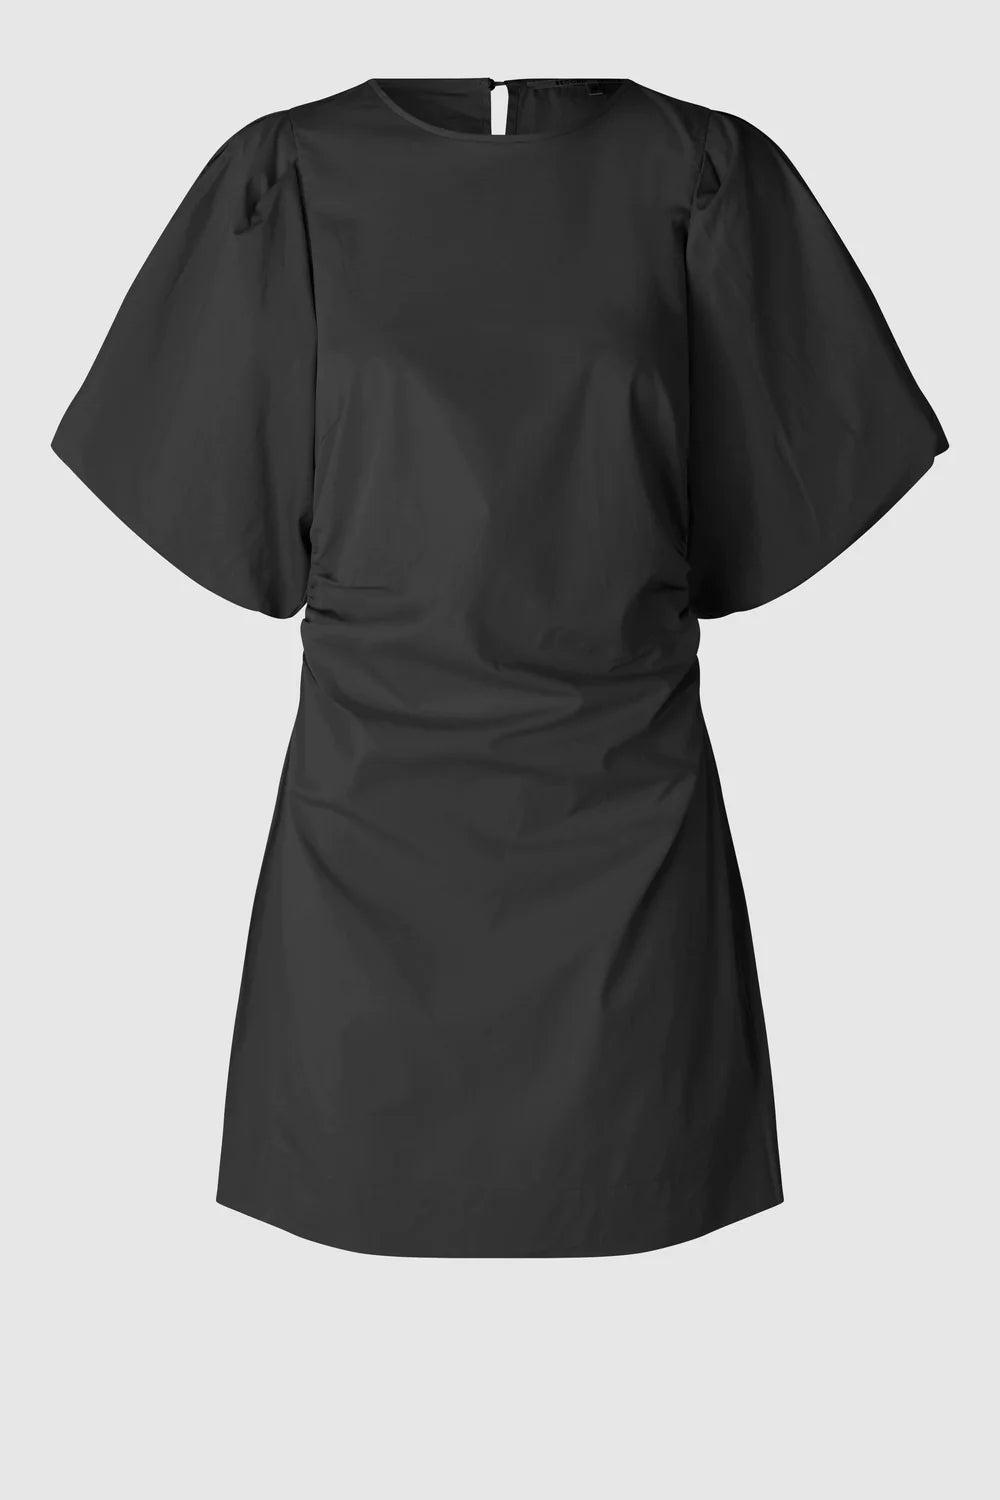 Matisol Mini Dress Black